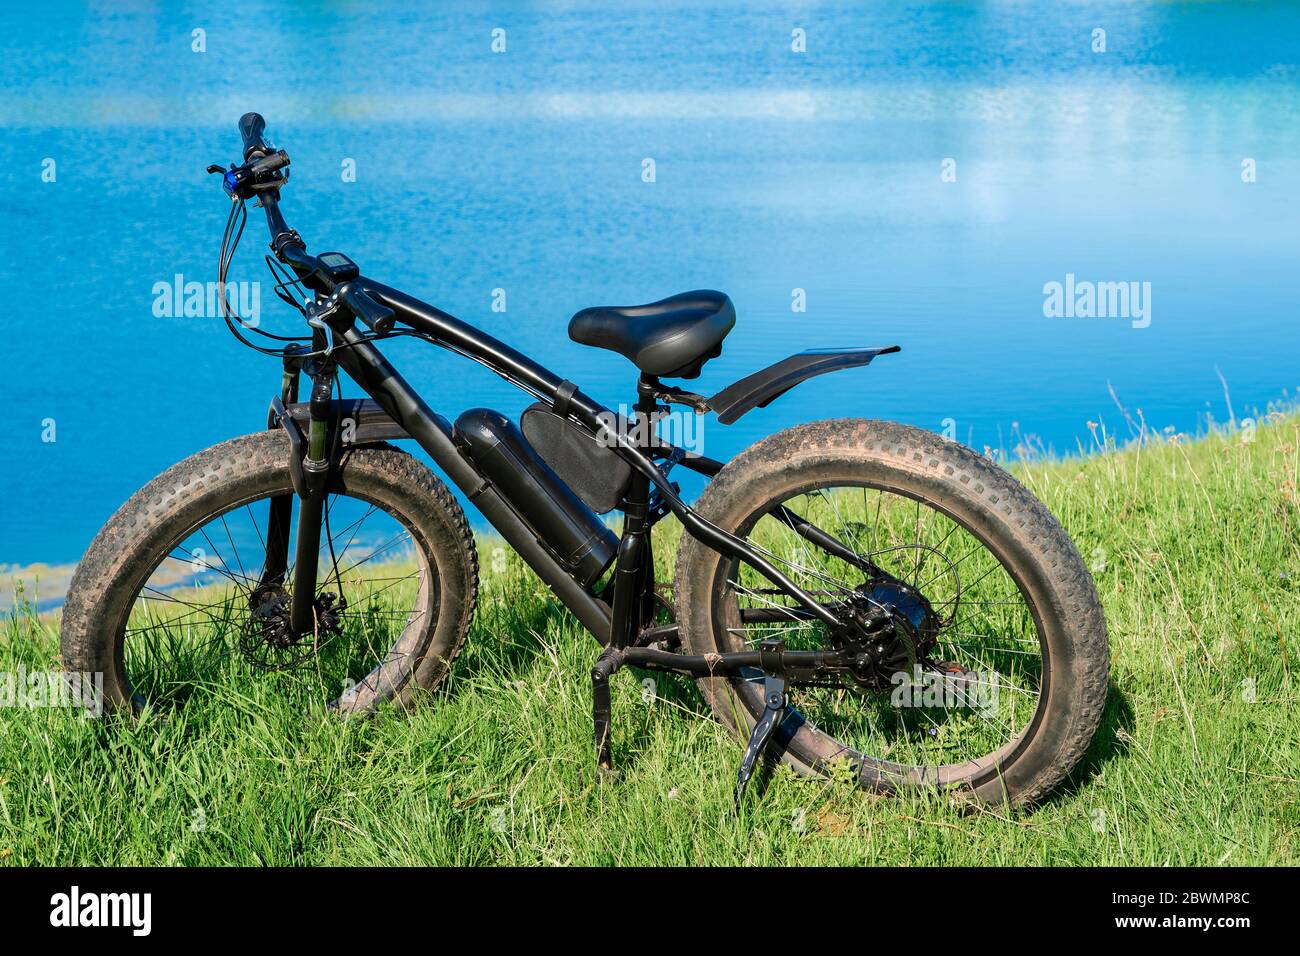 Schwarzes E-Bike mit dicken Rädern auf dem Gras in der Nähe des Sees.  Fatbike Stockfotografie - Alamy